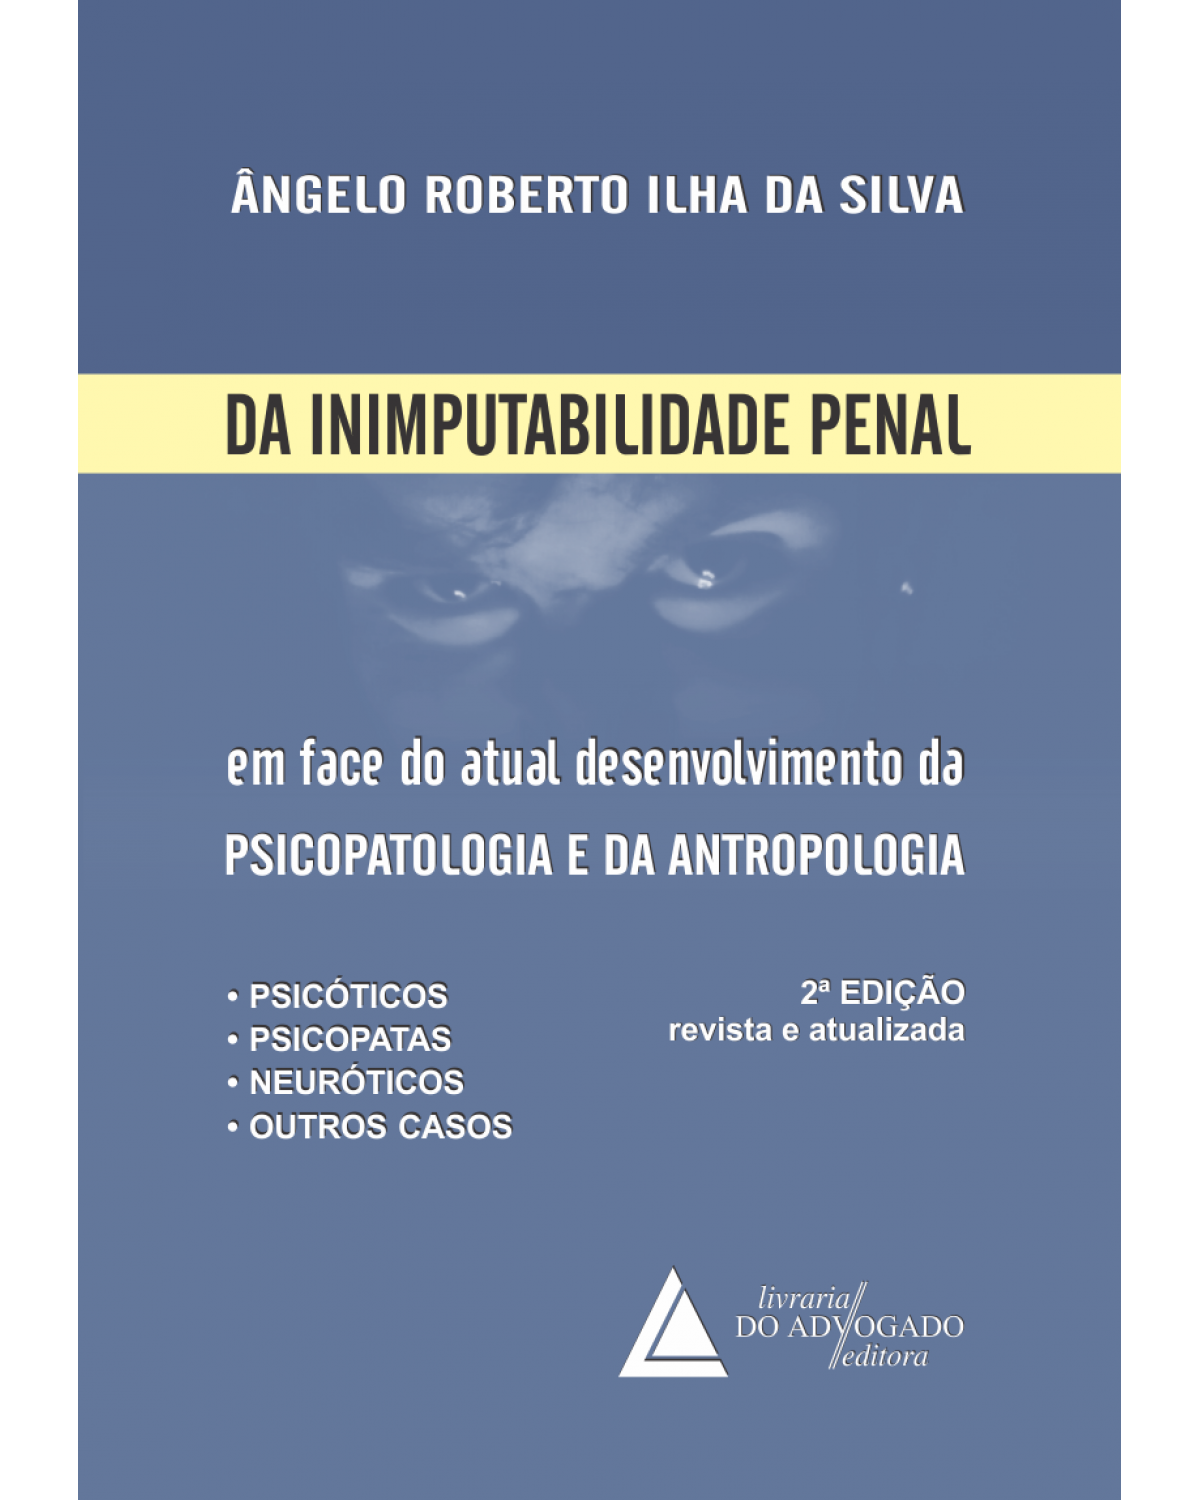 Da inimputabilidade penal: Em face do atual desenvolvimento da psicopatologia e da antropologia - 2ª Edição | 2015